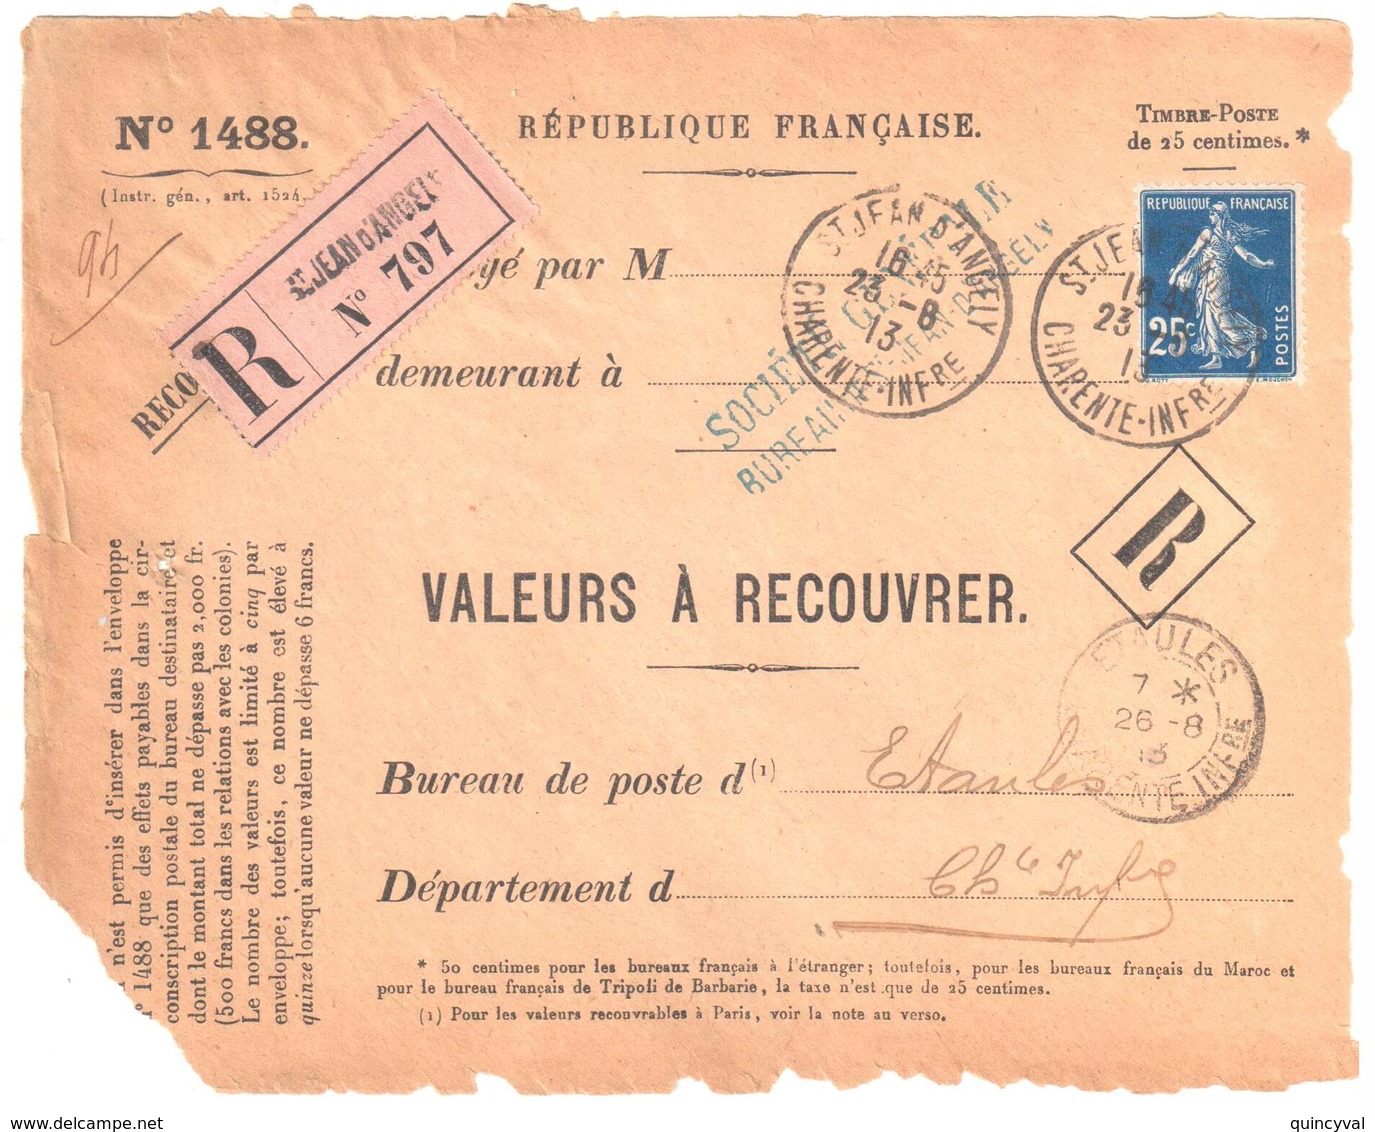 St JEAN D'ANGELY Charente Inf Valeur à Recouvrer N° 1488 Yv 140 Semeuse 25c Bleu Tarif 1 5 10 Dest Etaules Ob 1913  Reco - Covers & Documents